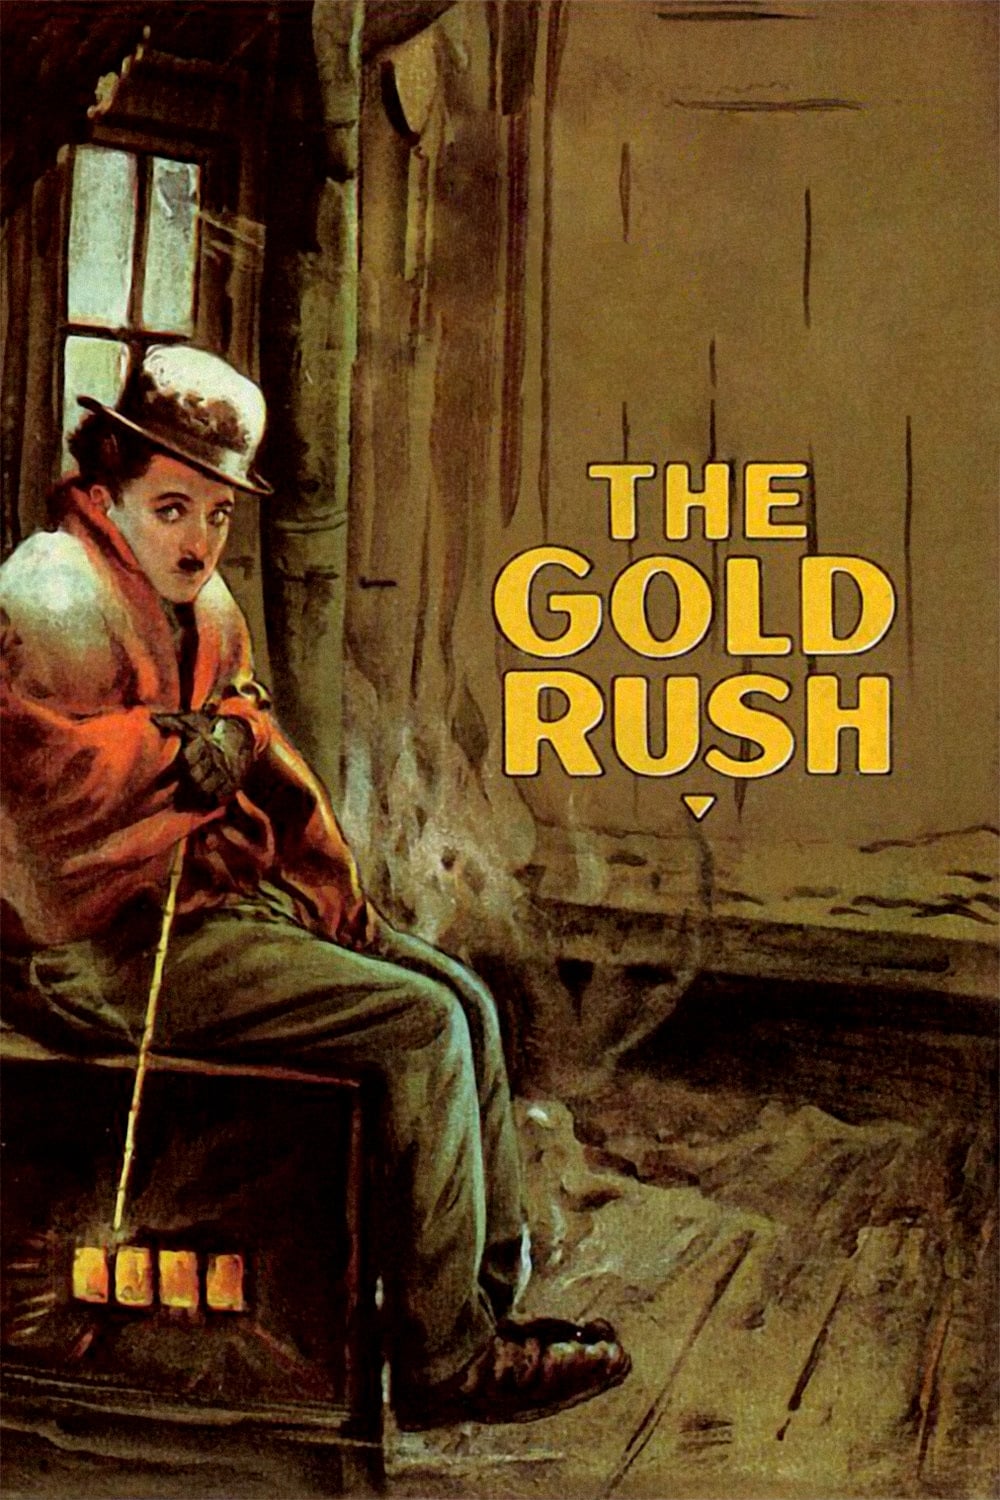 Em Busca do Ouro (1925)